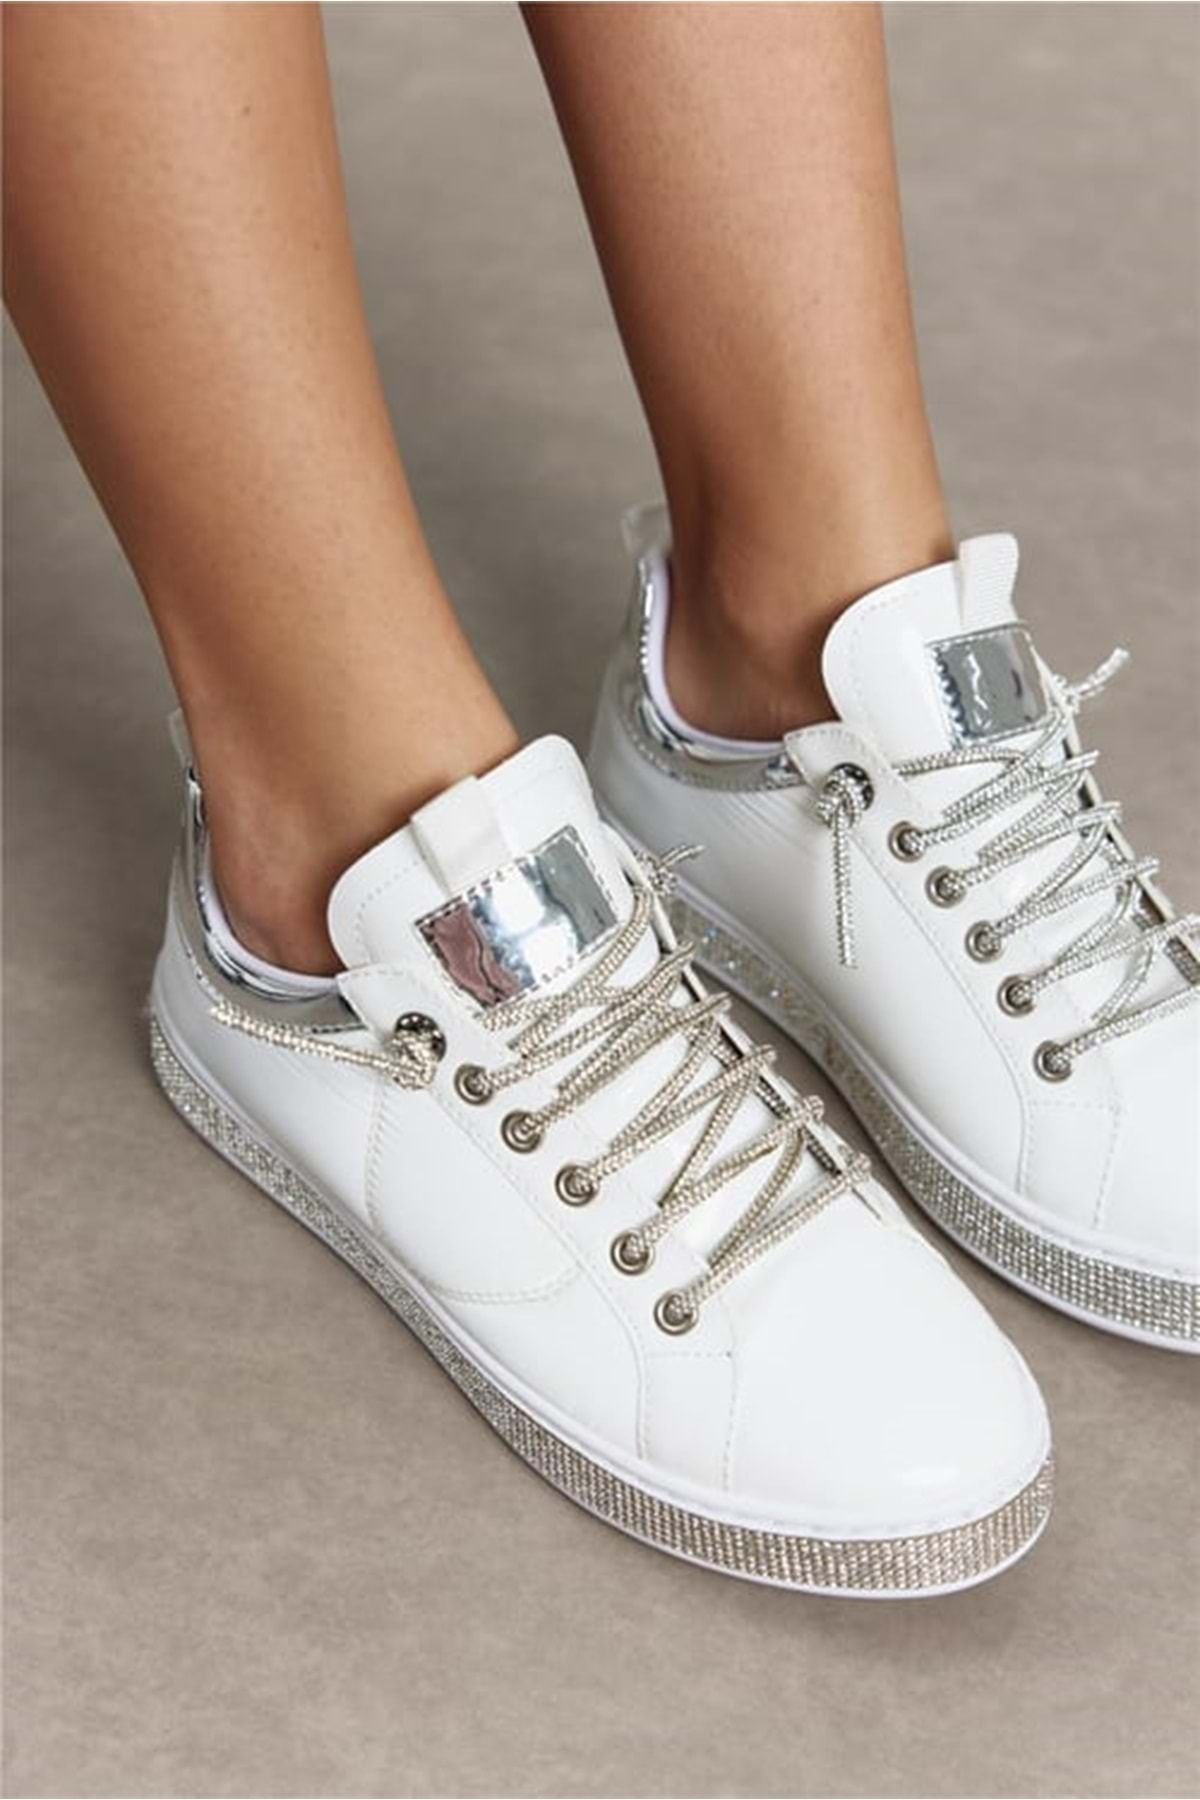 Kids Club Shoes Feles Tabanı Taş Şeritli Taşlı Bağcık Kadın Spor Ayakkabı BEYAZ